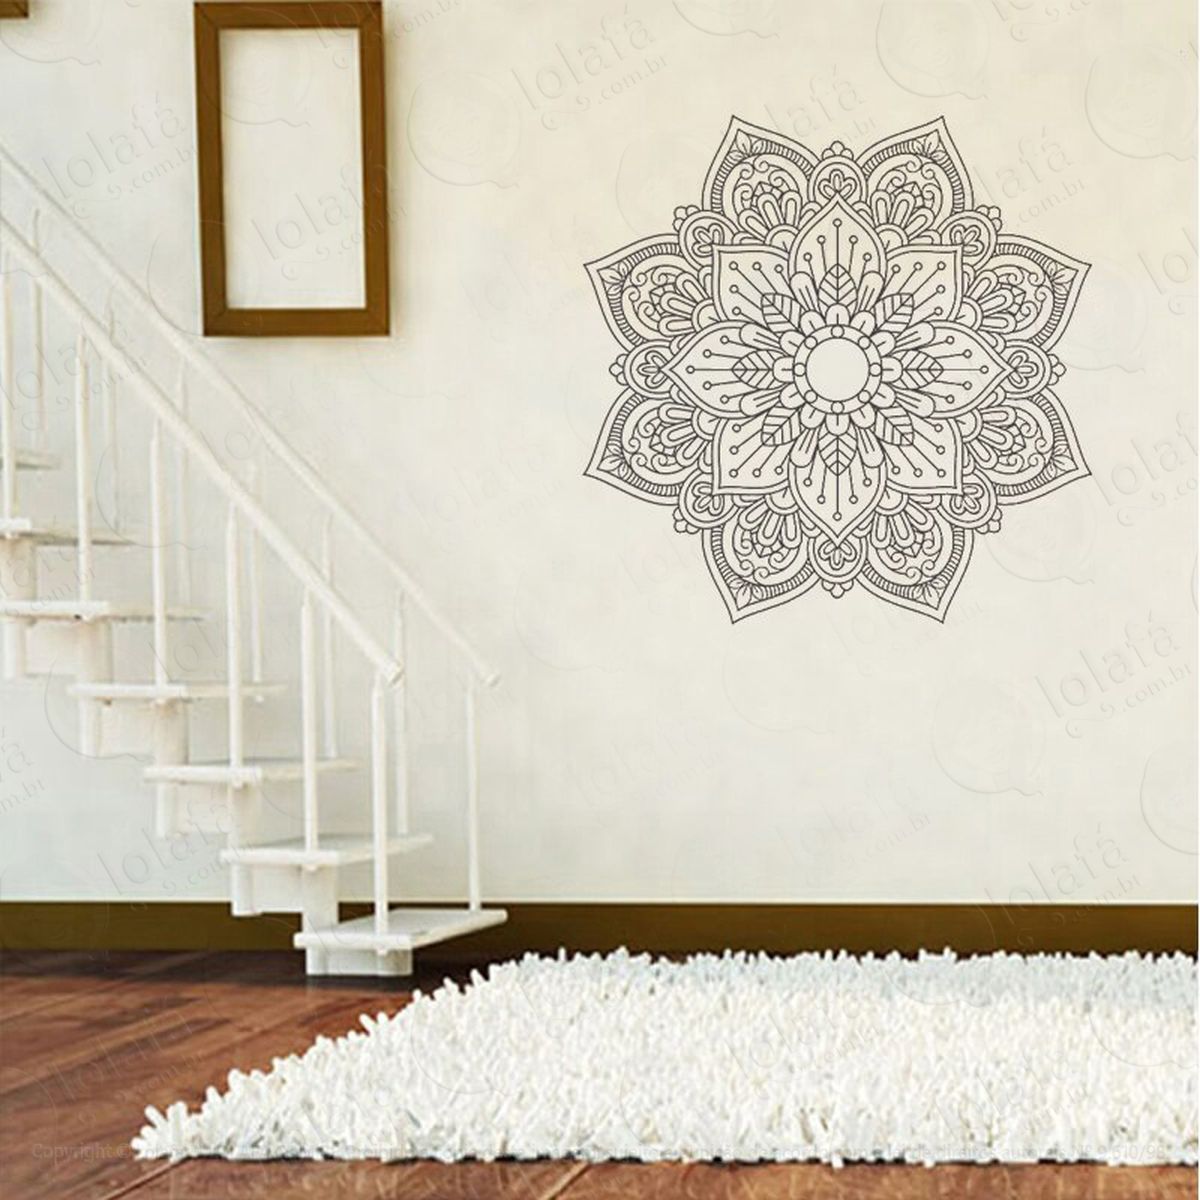 mandala da bondade e harmonia adesivo de parede decorativo para casa, quarto, sala e vidro - mod:215